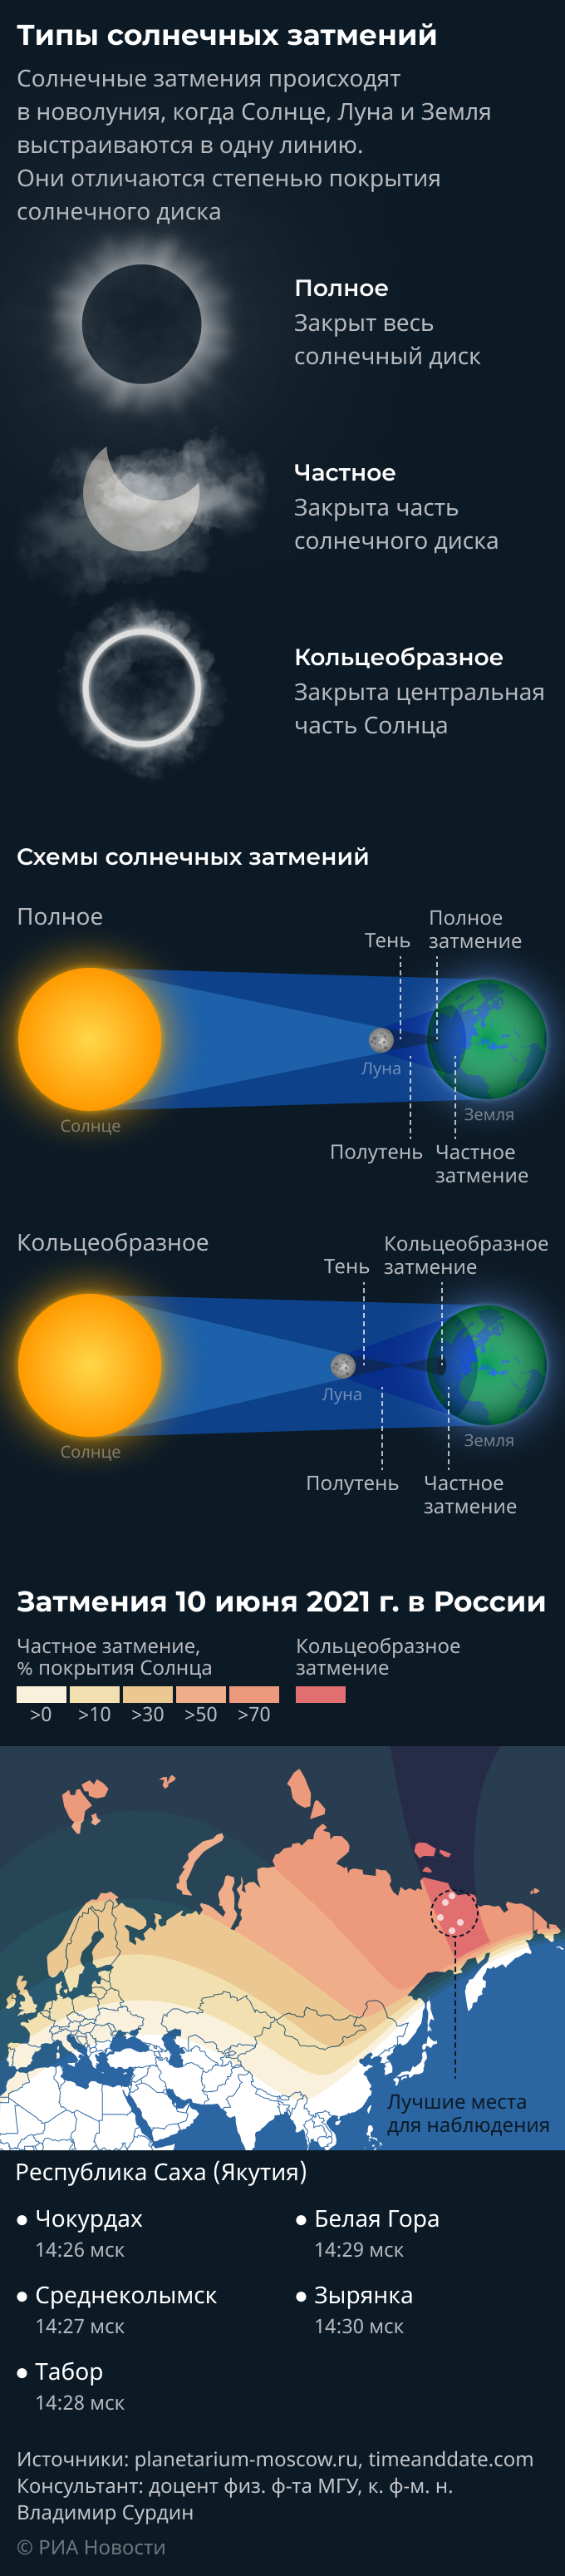 Кольцевое солнечное затмение. Когда будет солнечное затмение в 2021 году в России. Количество солнечных затмений в год. Через сколько лет будет затмение в России.